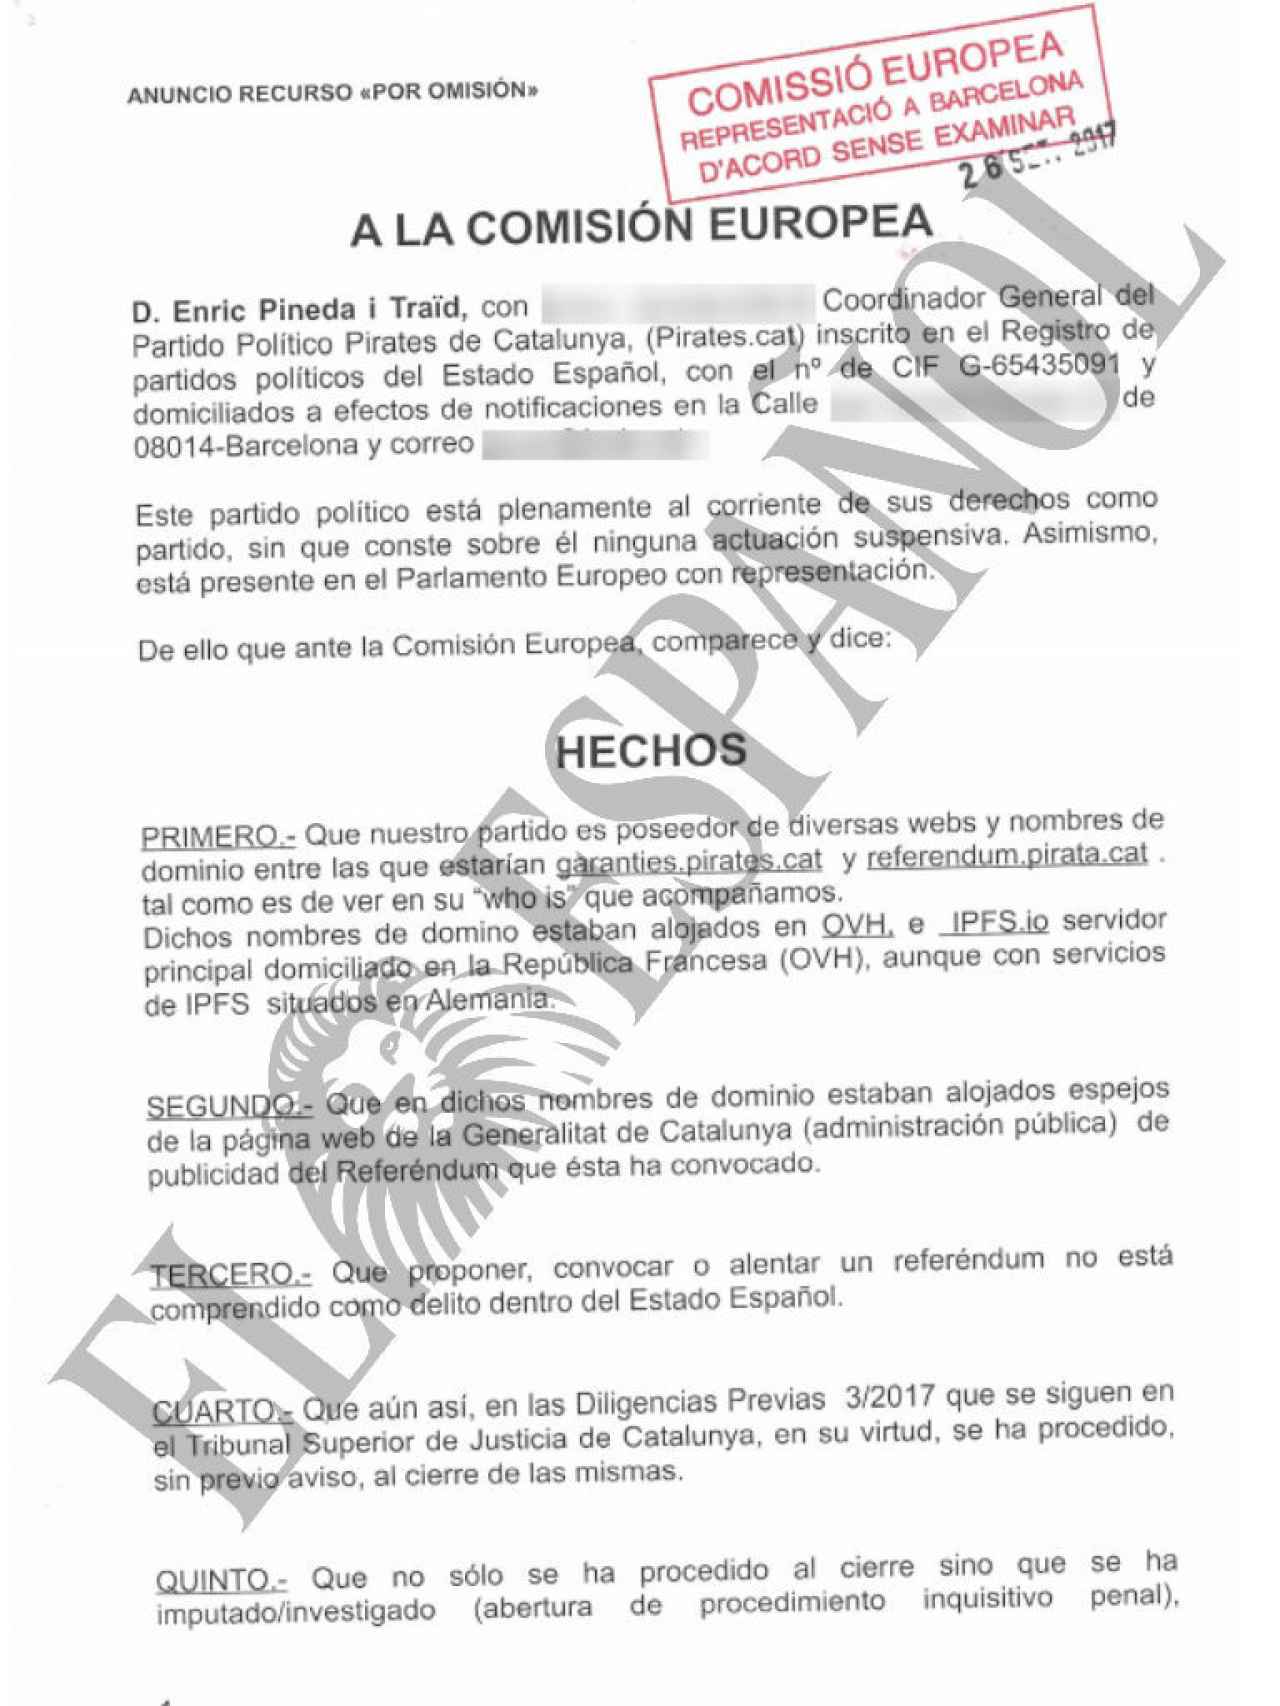 Fragmento del documento presentado ante la Comisión Europea.